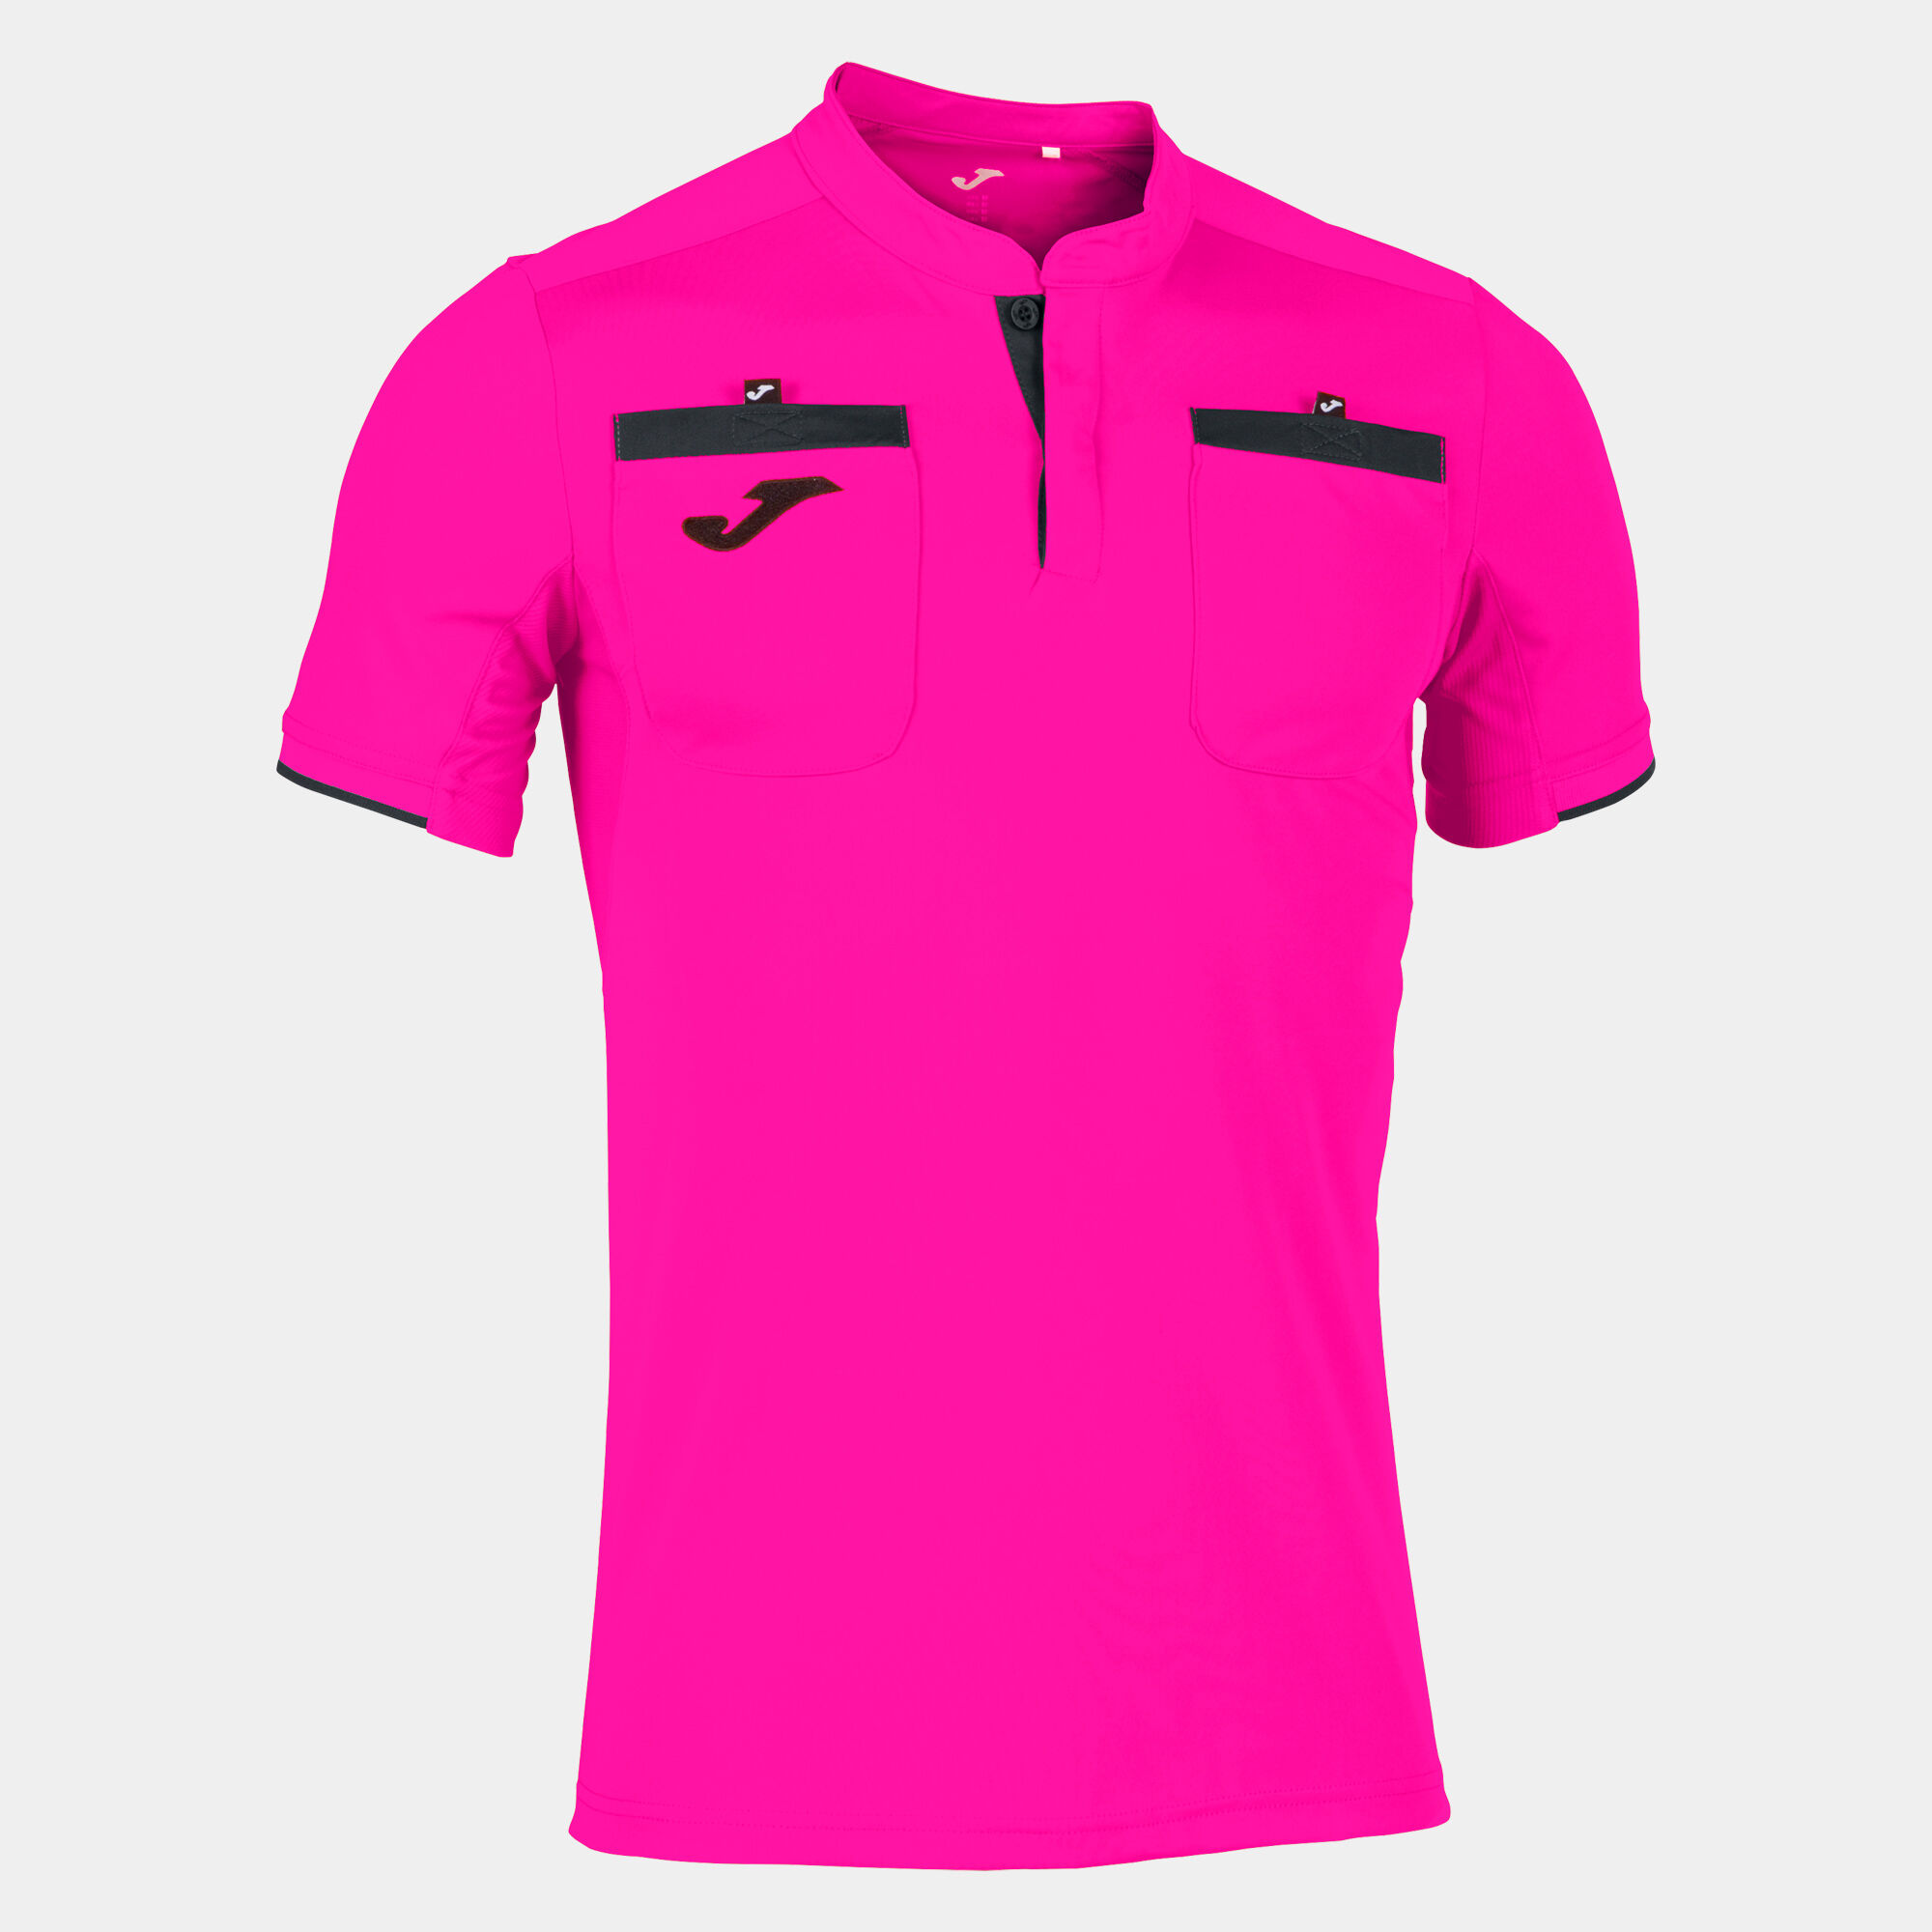 Shirt short sleeve man Referee fluorescent pink